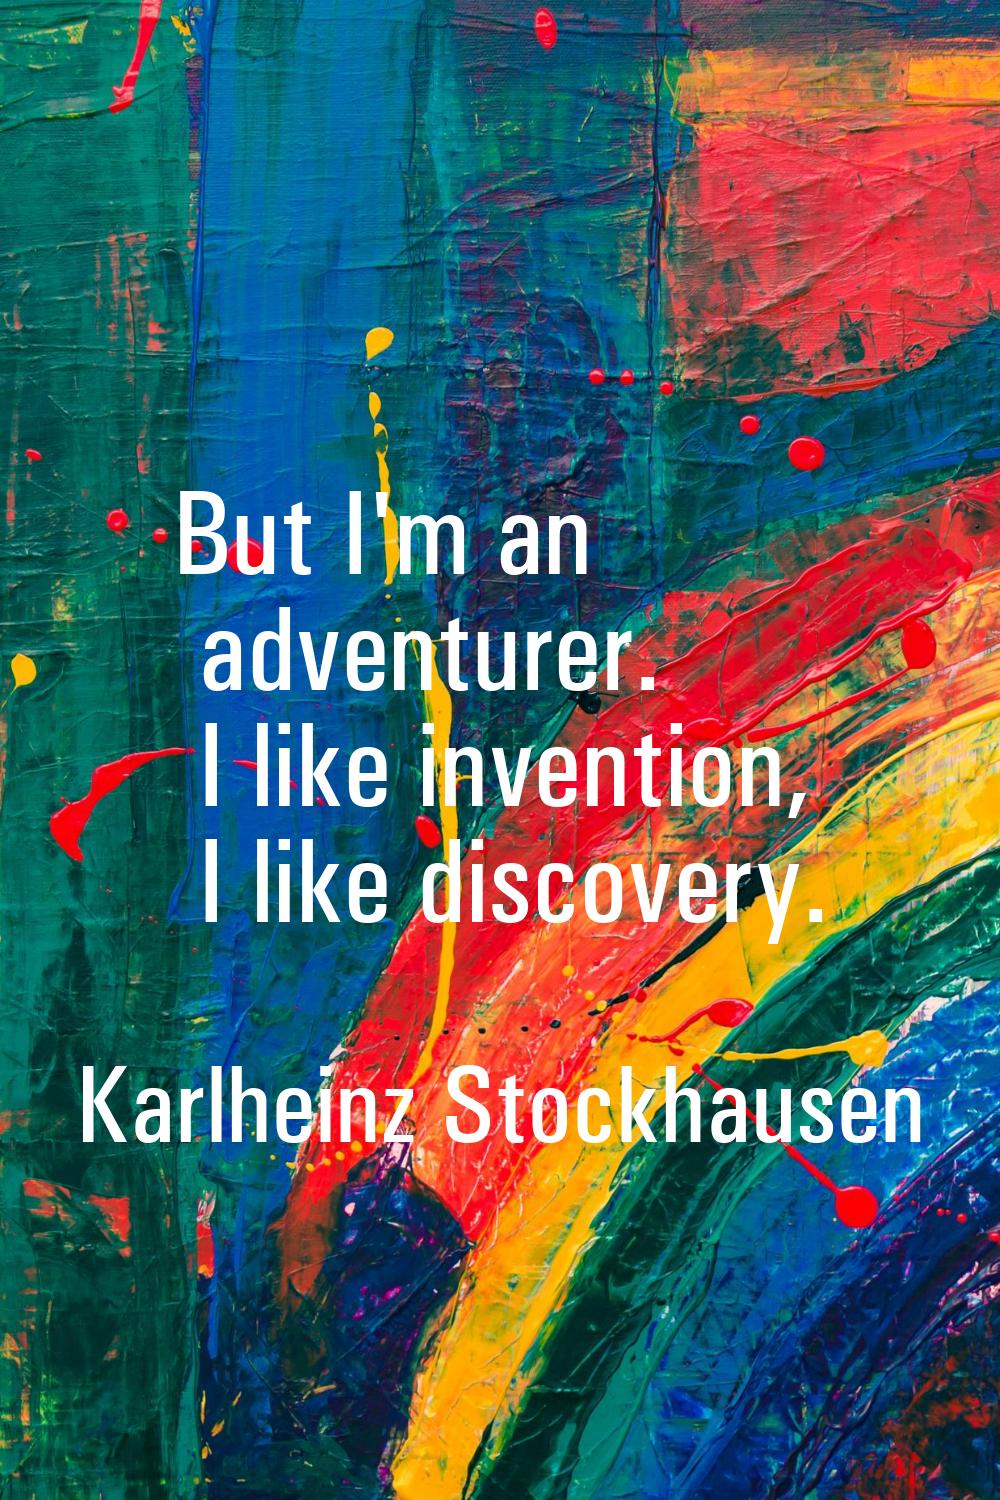 But I'm an adventurer. I like invention, I like discovery.